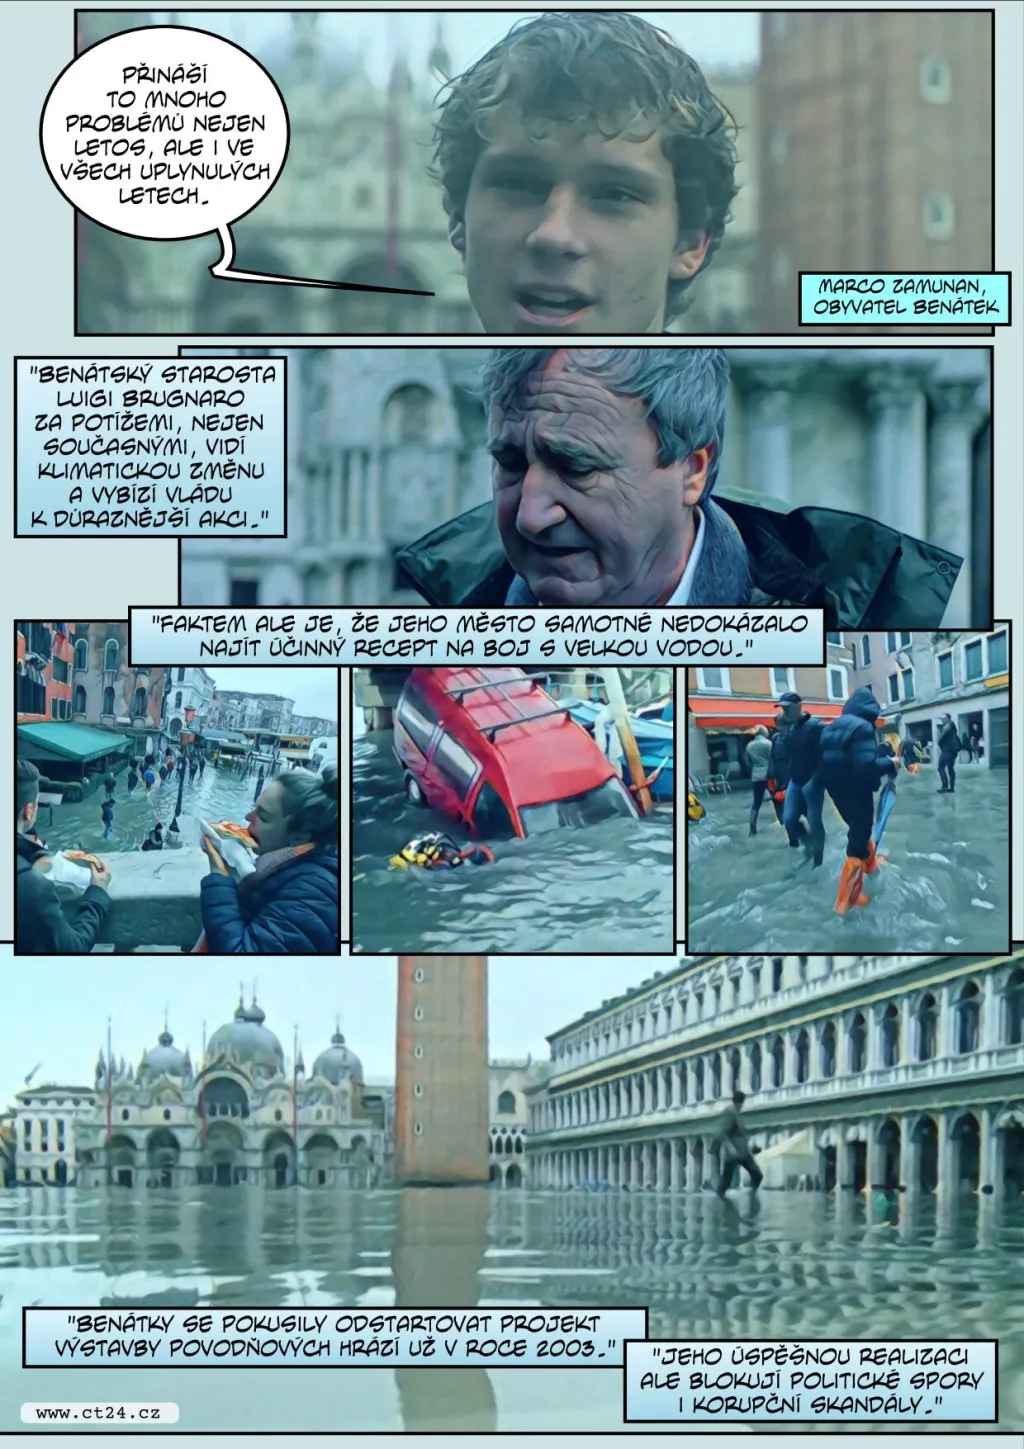 Obchody i památky pod vodou. Italská vláda vyhlásila v Benátkách stav nouze